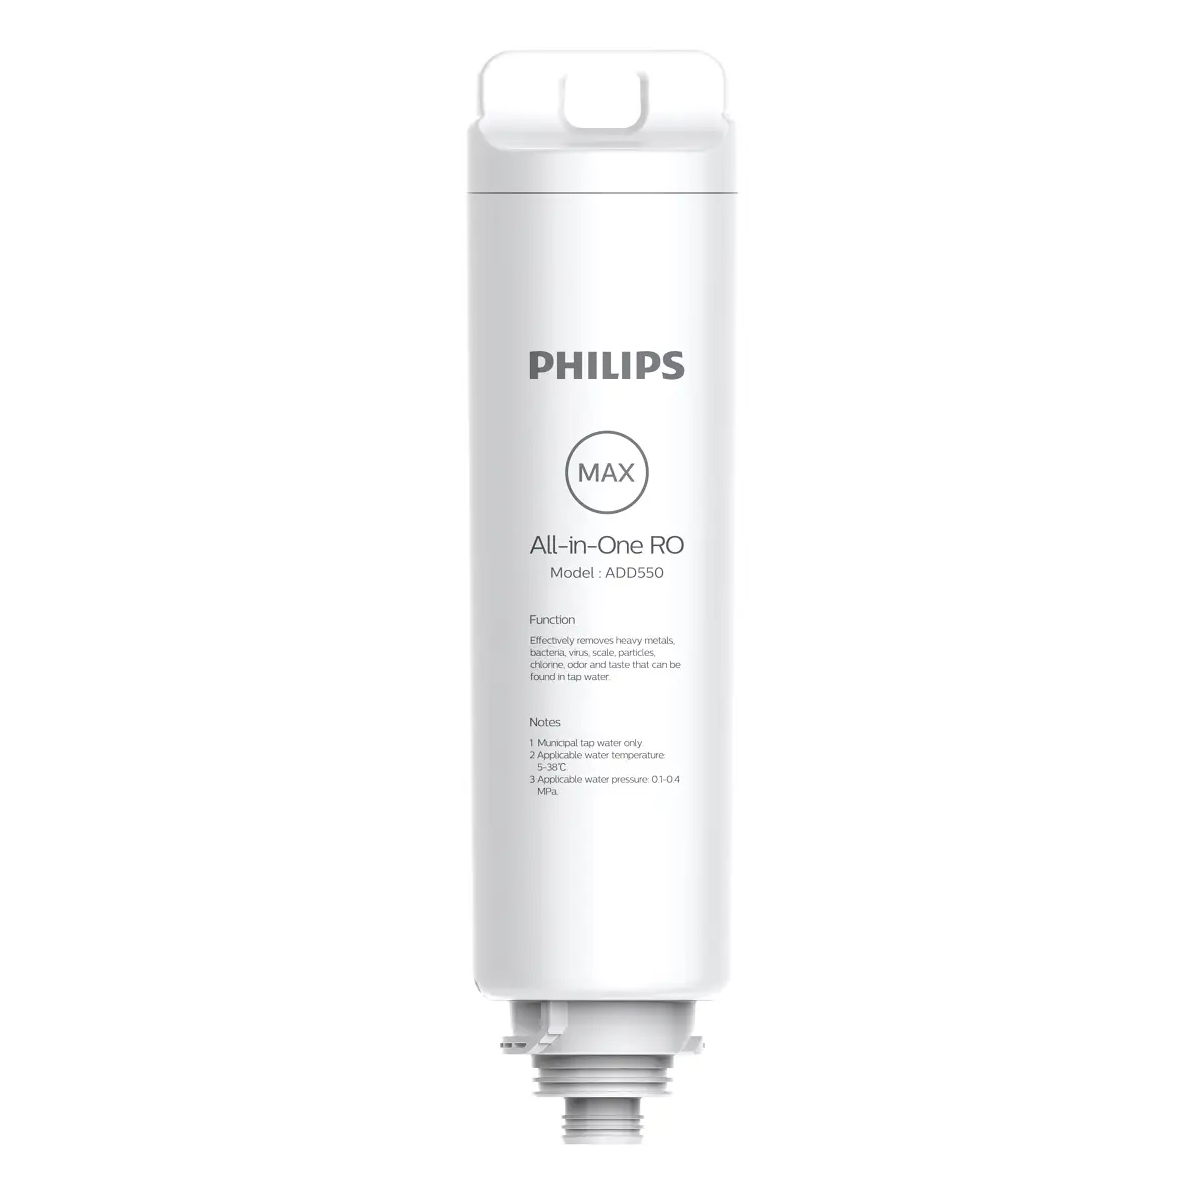 PHILIPS [i]RO純淨飲水機濾芯 ADD550